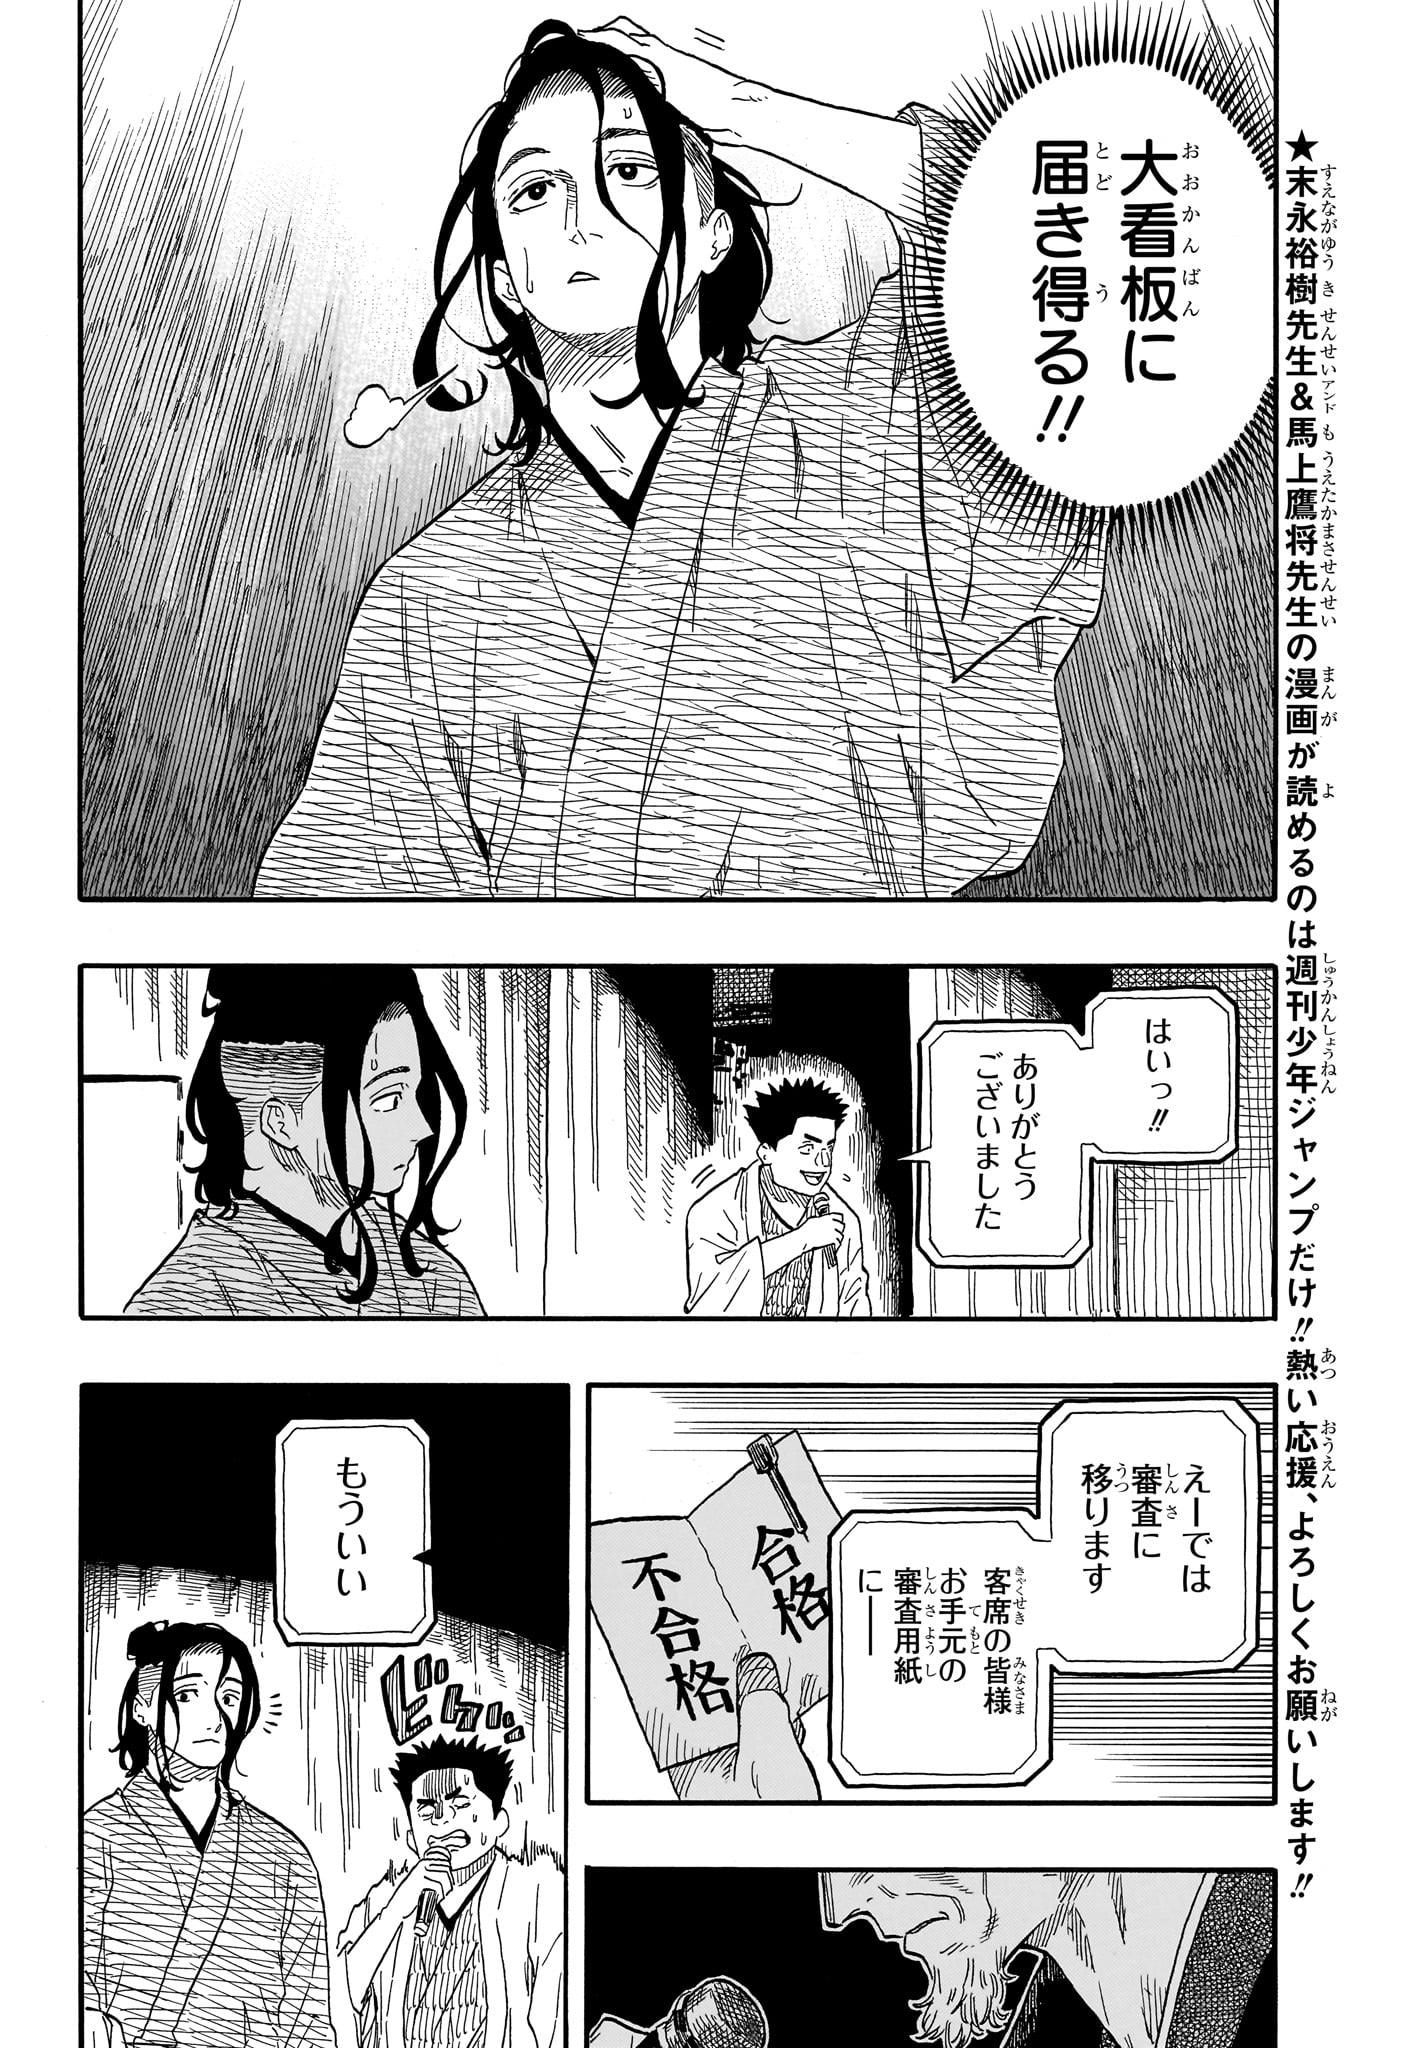 Akane-Banashi - Chapter 116 - Page 4